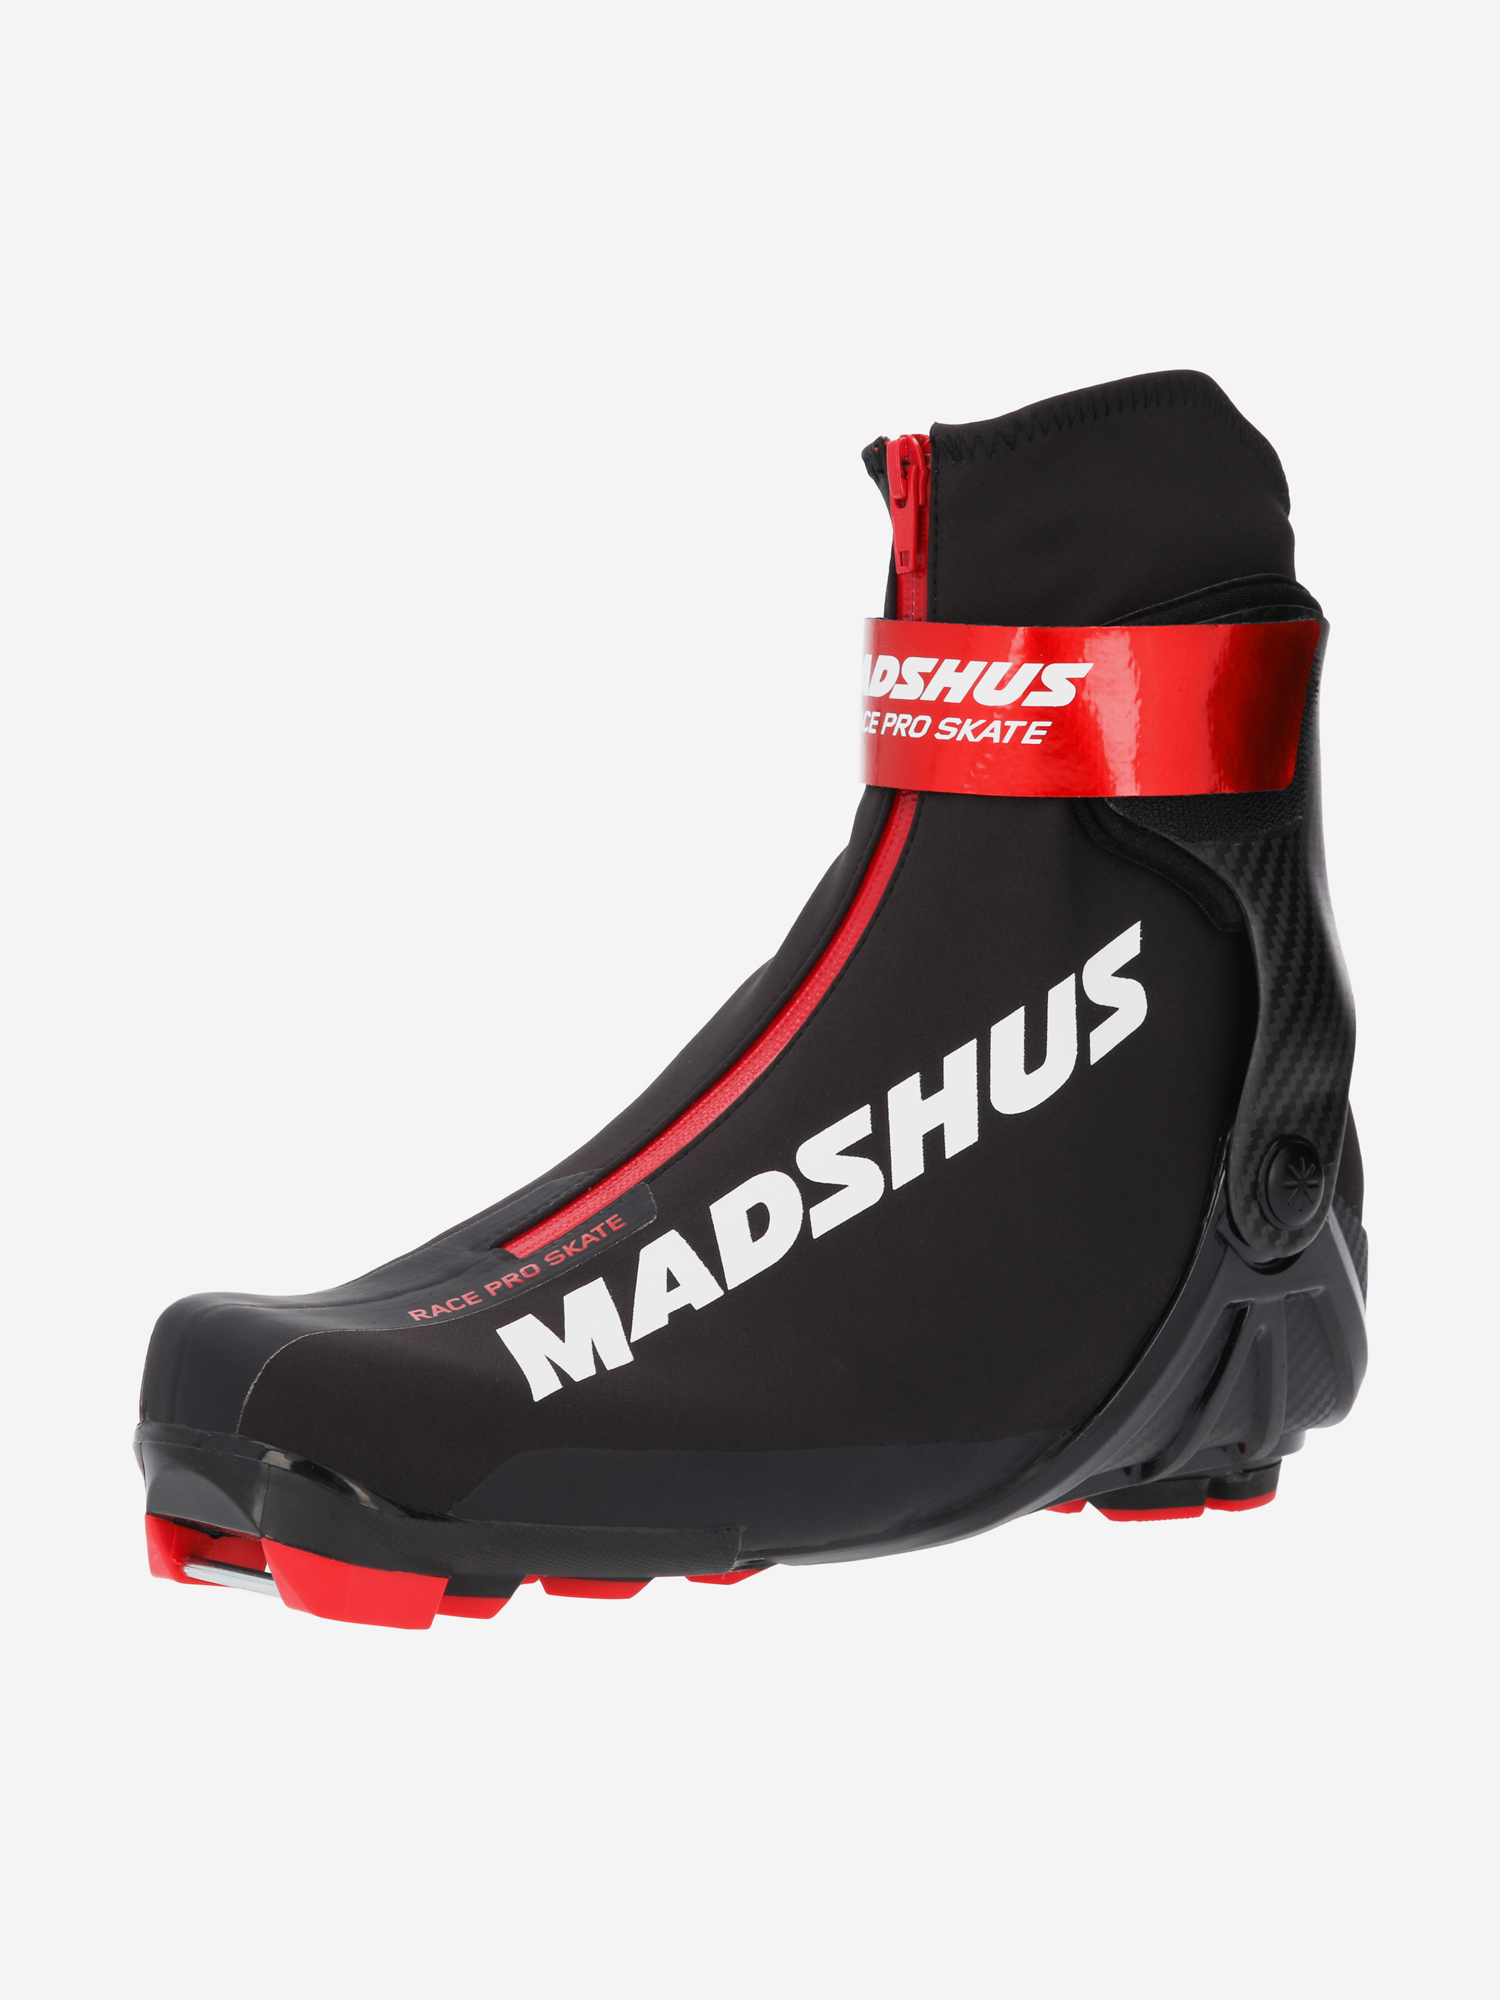 MADSHUS Лыжные ботинки RACE PRO SKATE Артикул: N200400401